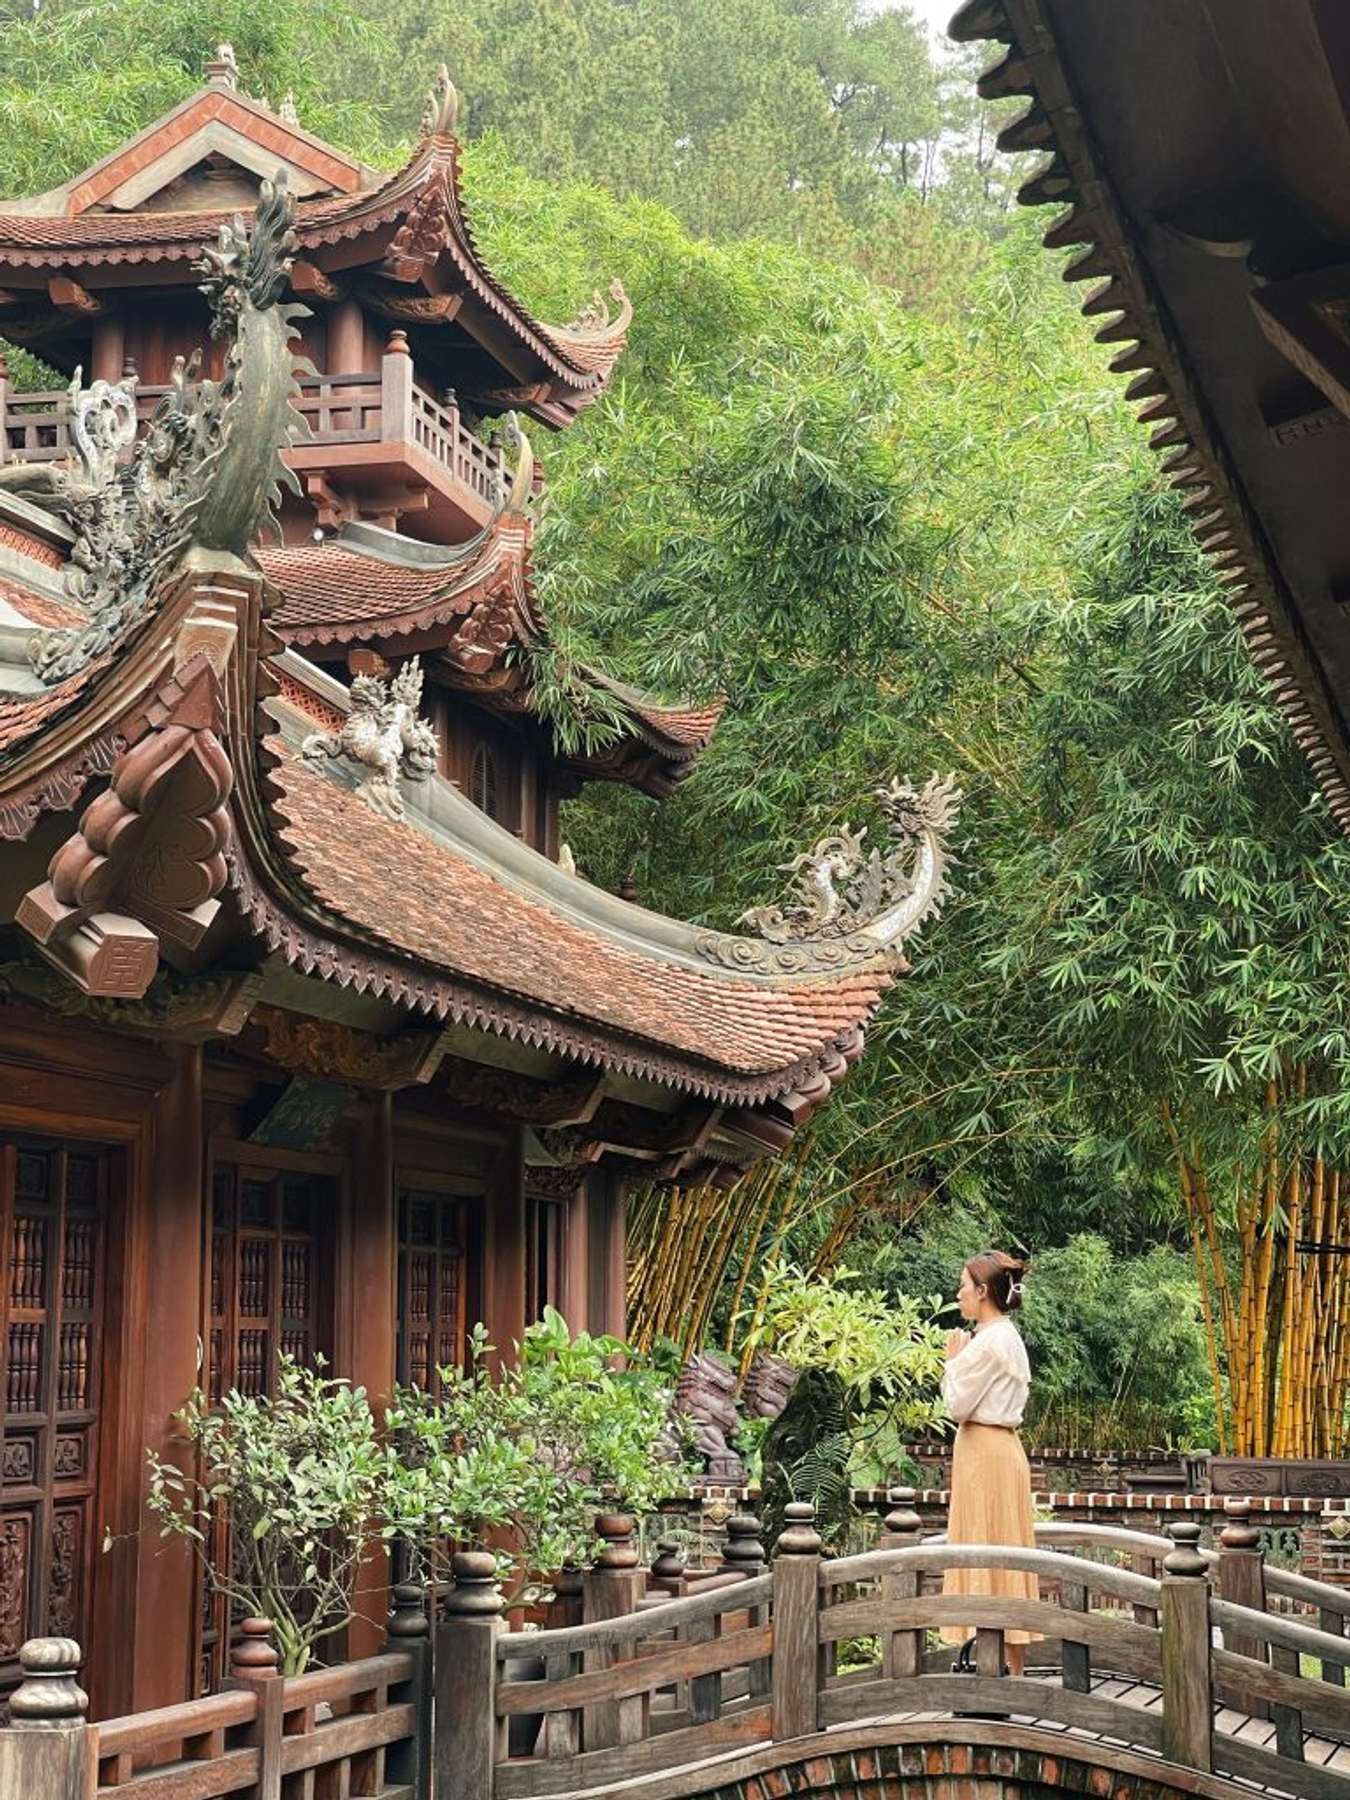 Tỉnh nhỏ thứ 2 Việt Nam được giải thưởng du lịch quốc tế, có nhiều chùa đẹp, cách Hà Nội chưa tới 100km- Ảnh 6.